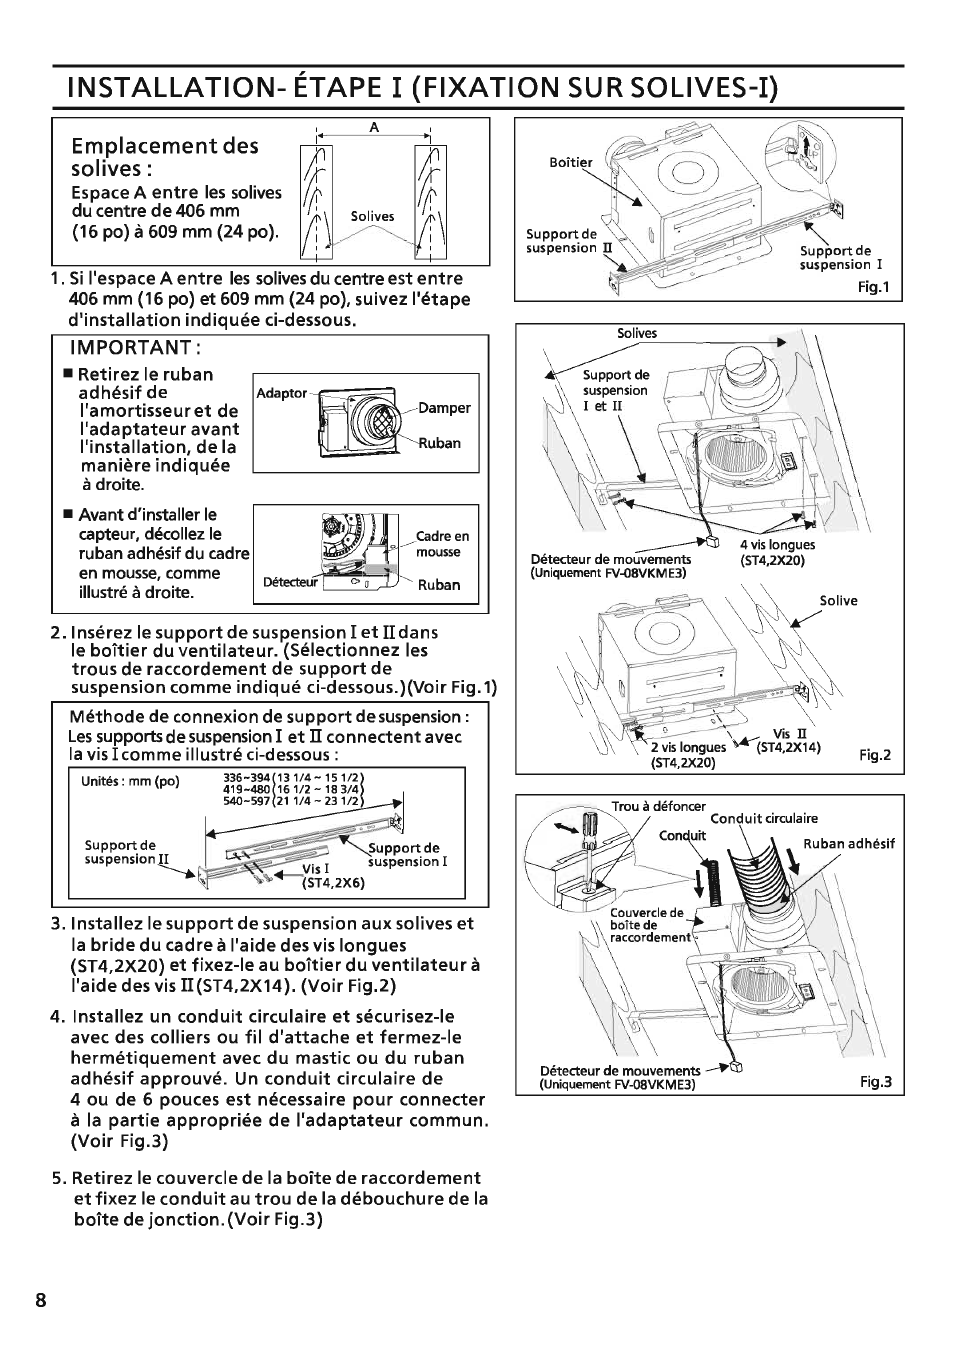 Emplacement des solives, Installation- étape i (fixation sur solives-i), Important | Panasonic FV-08VKSE3 Manuel d'utilisation | Page 8 / 12